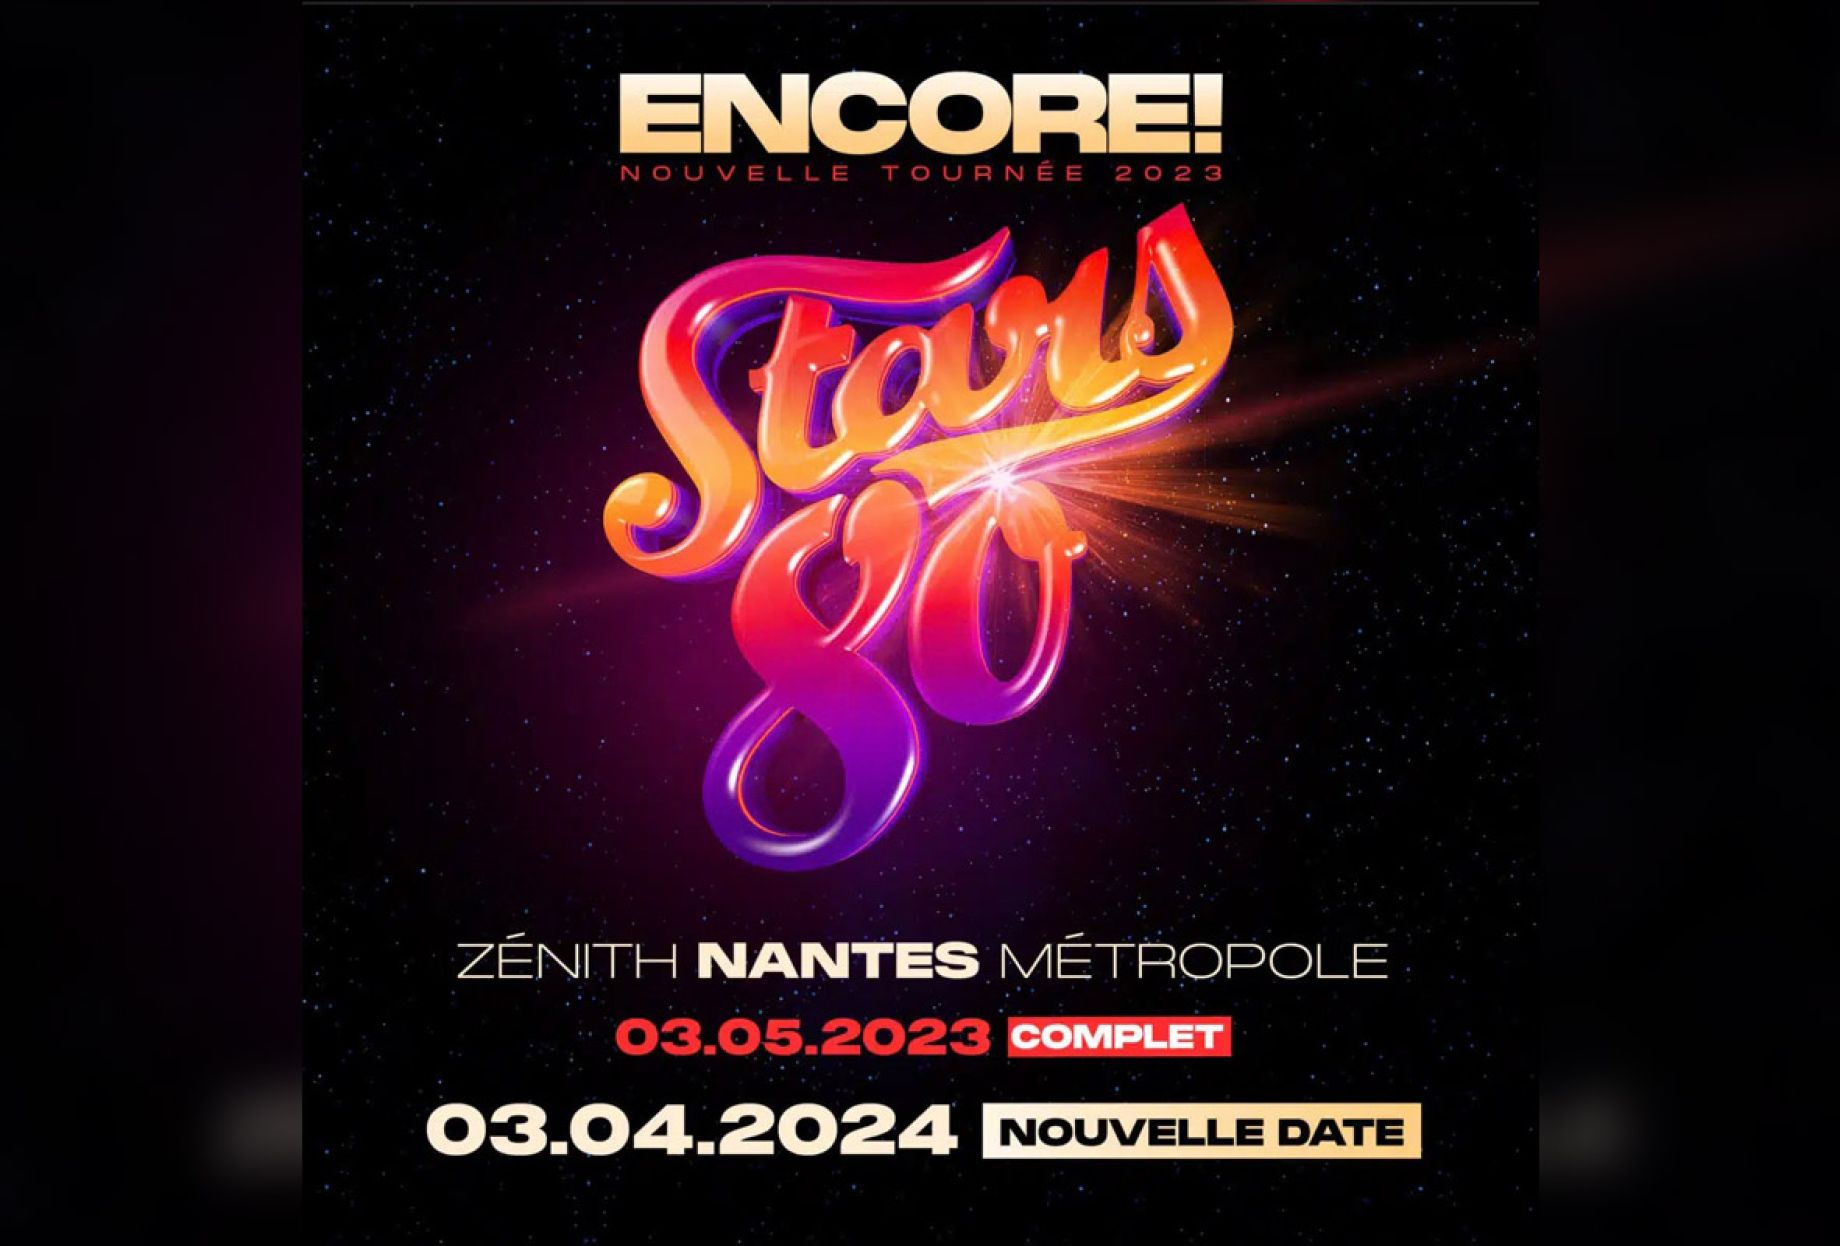 Stars 80 en concert à Nantes